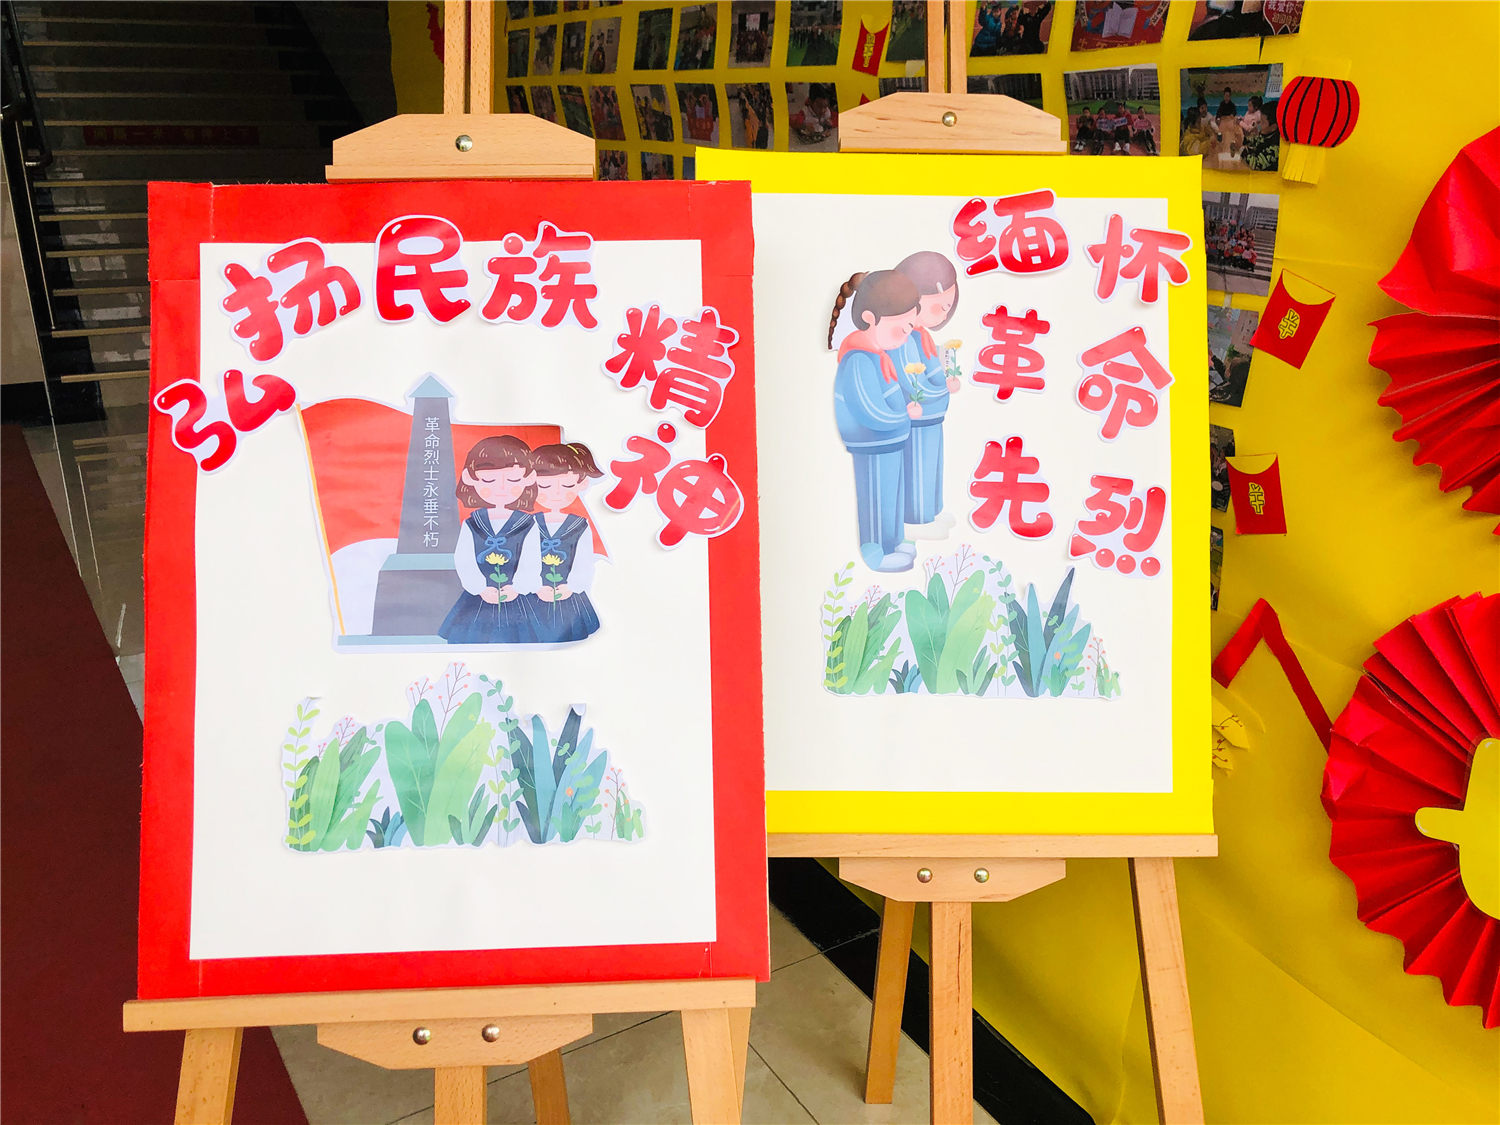 缅怀革命先烈·弘扬民族精神——汉江实验学校幼儿园清明节主题活动